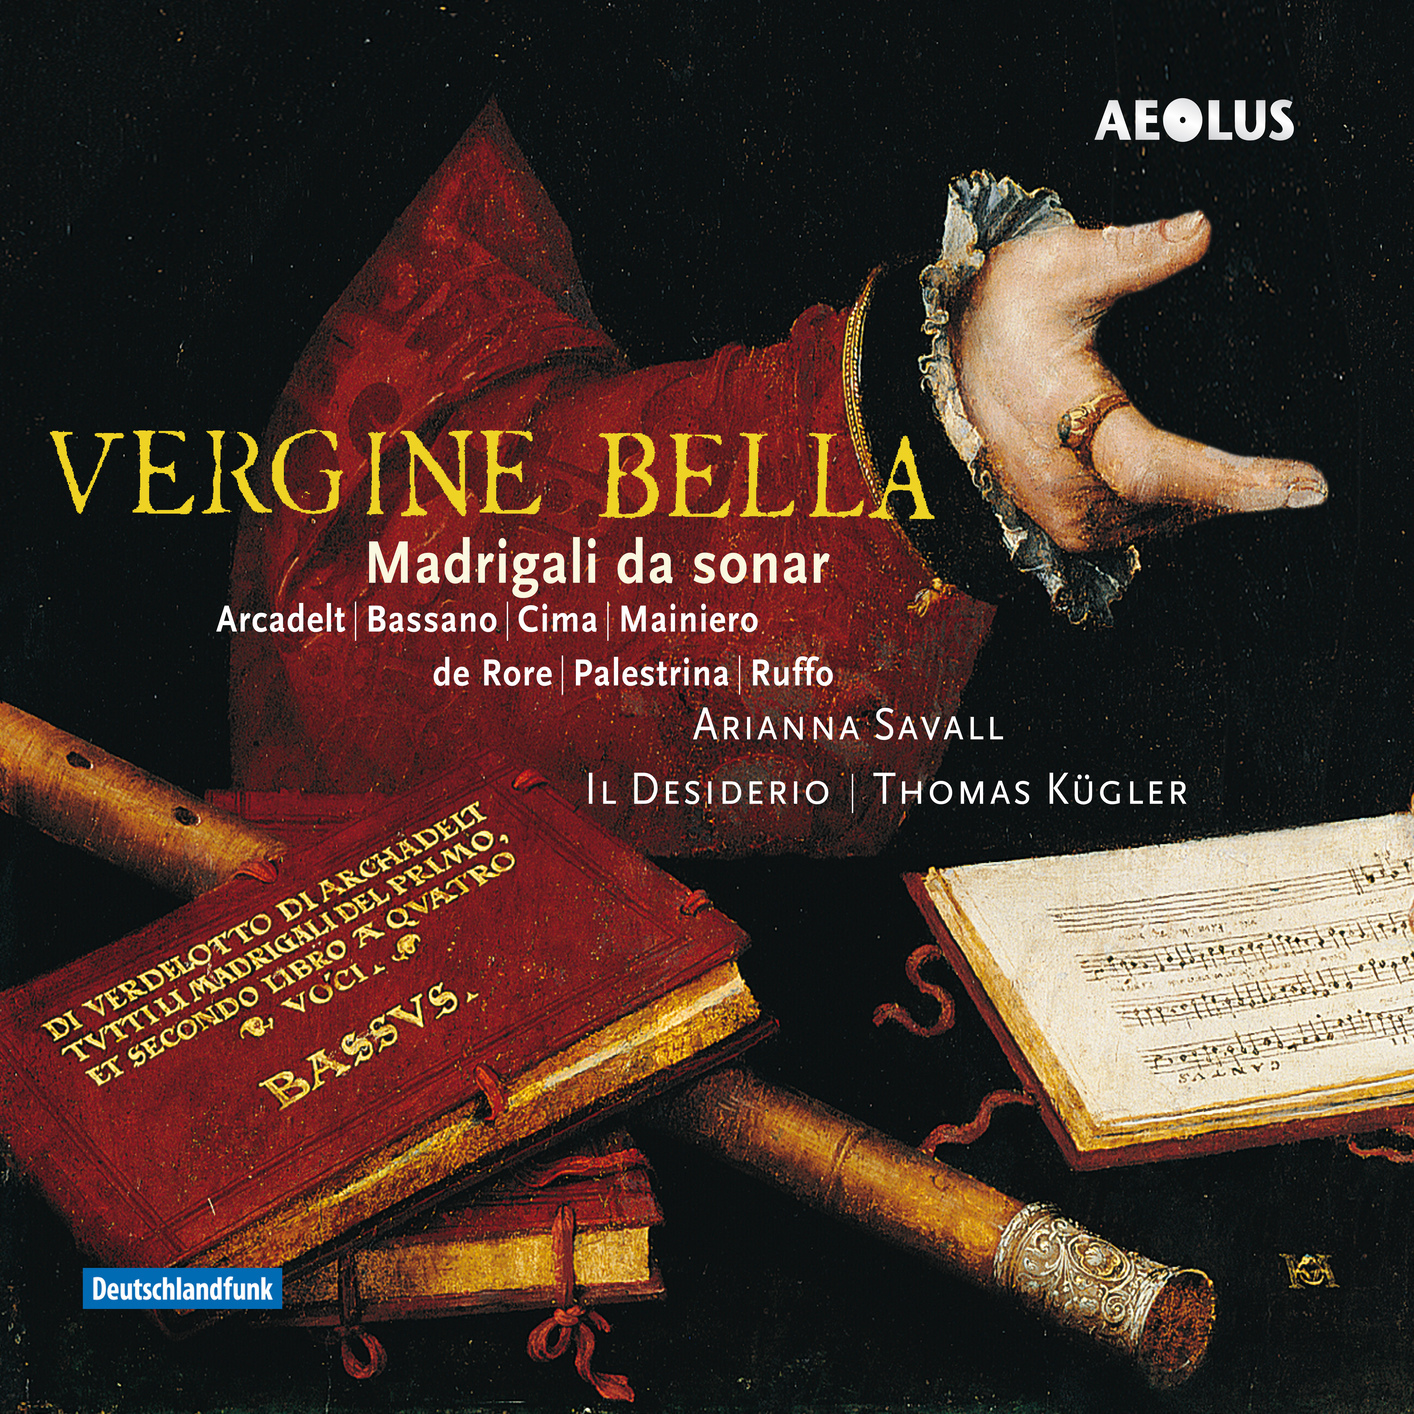 Palestrina de Rore et al. - Vergine bella - Arianna Savall soprano